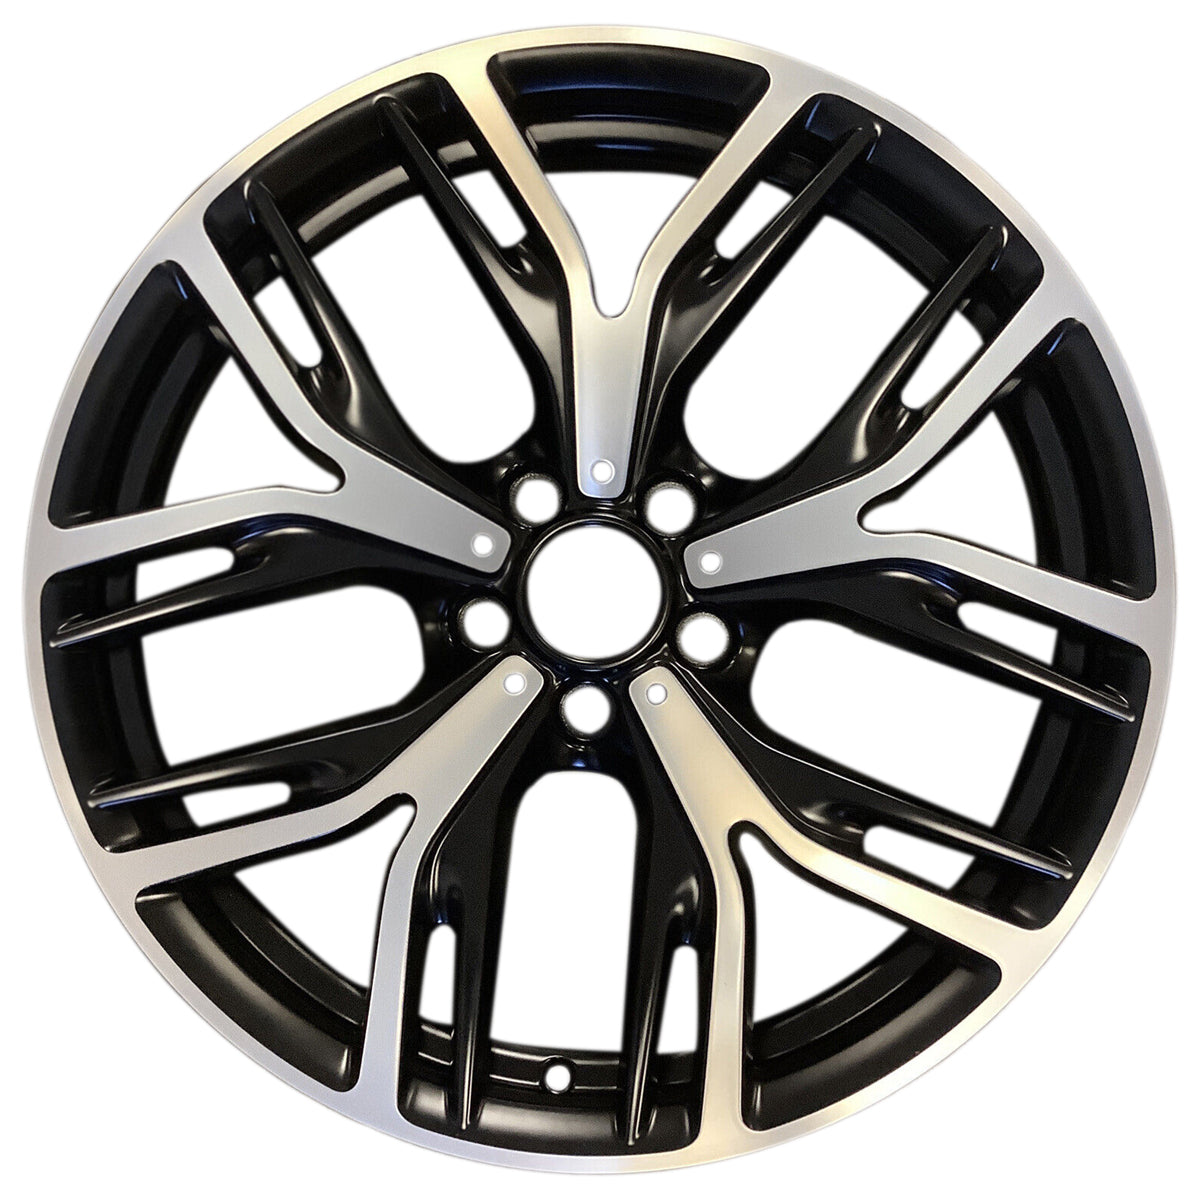 2016 BMW X3 20" Rear OEM Wheel Rim Style 542 W86108MB